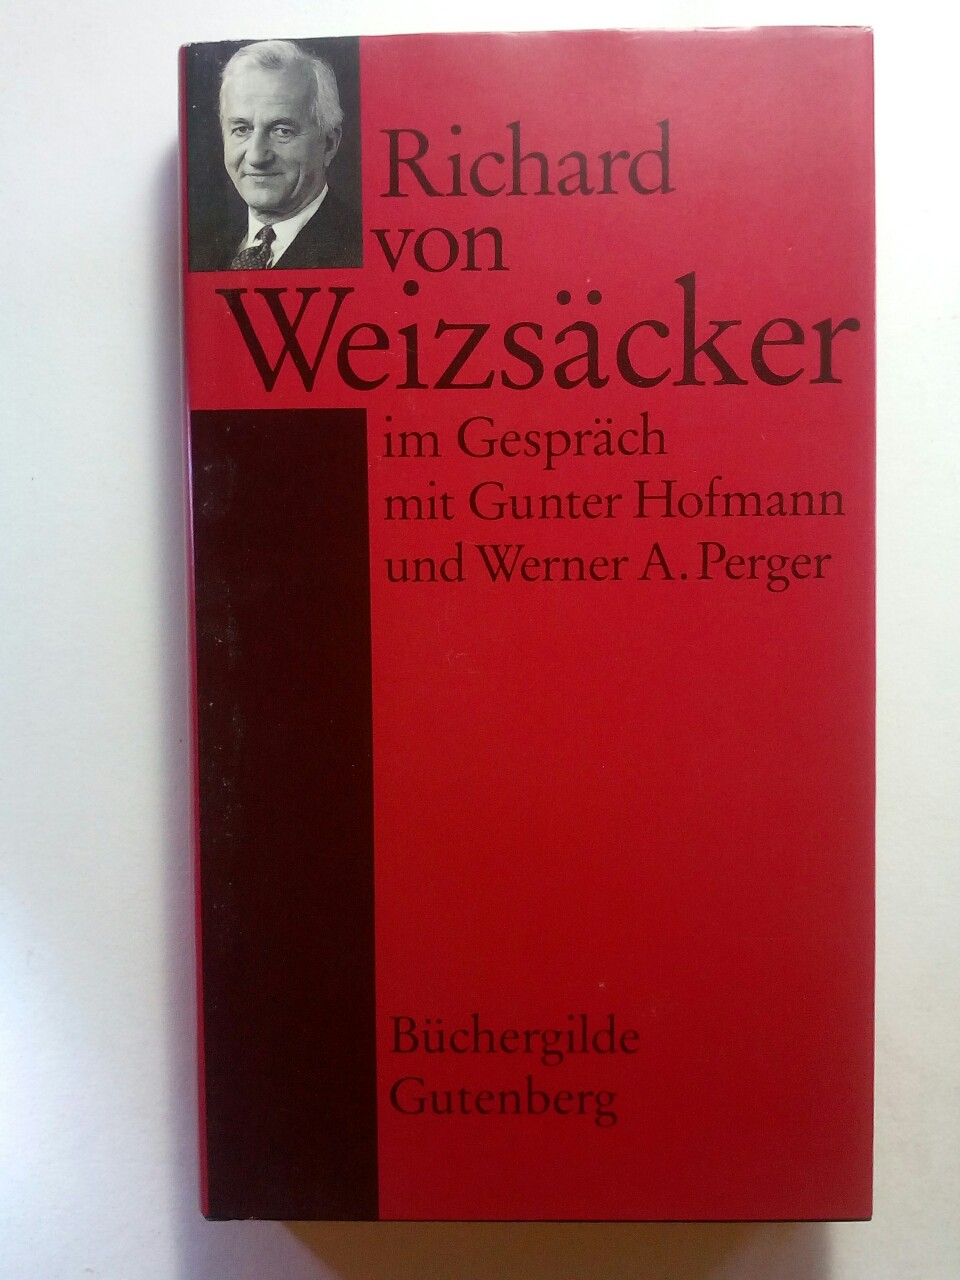 Richard von Weizsäcker - Im Gespräch mit Gunter Hofmann und Werner A. Perger - Richard von Weizäcker